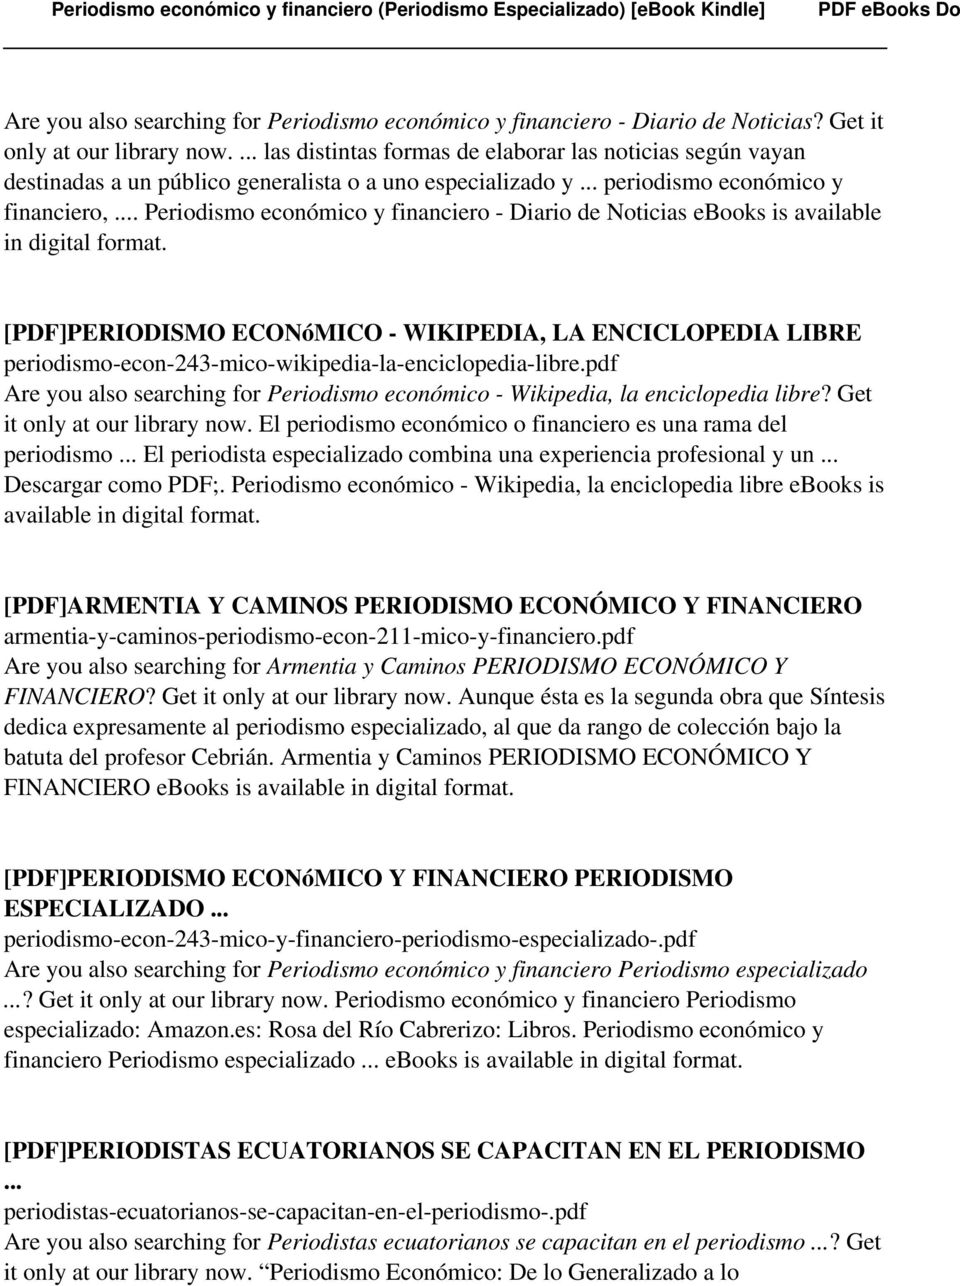 .. Periodismo económico y financiero - Diario de Noticias ebooks is available in digital format.